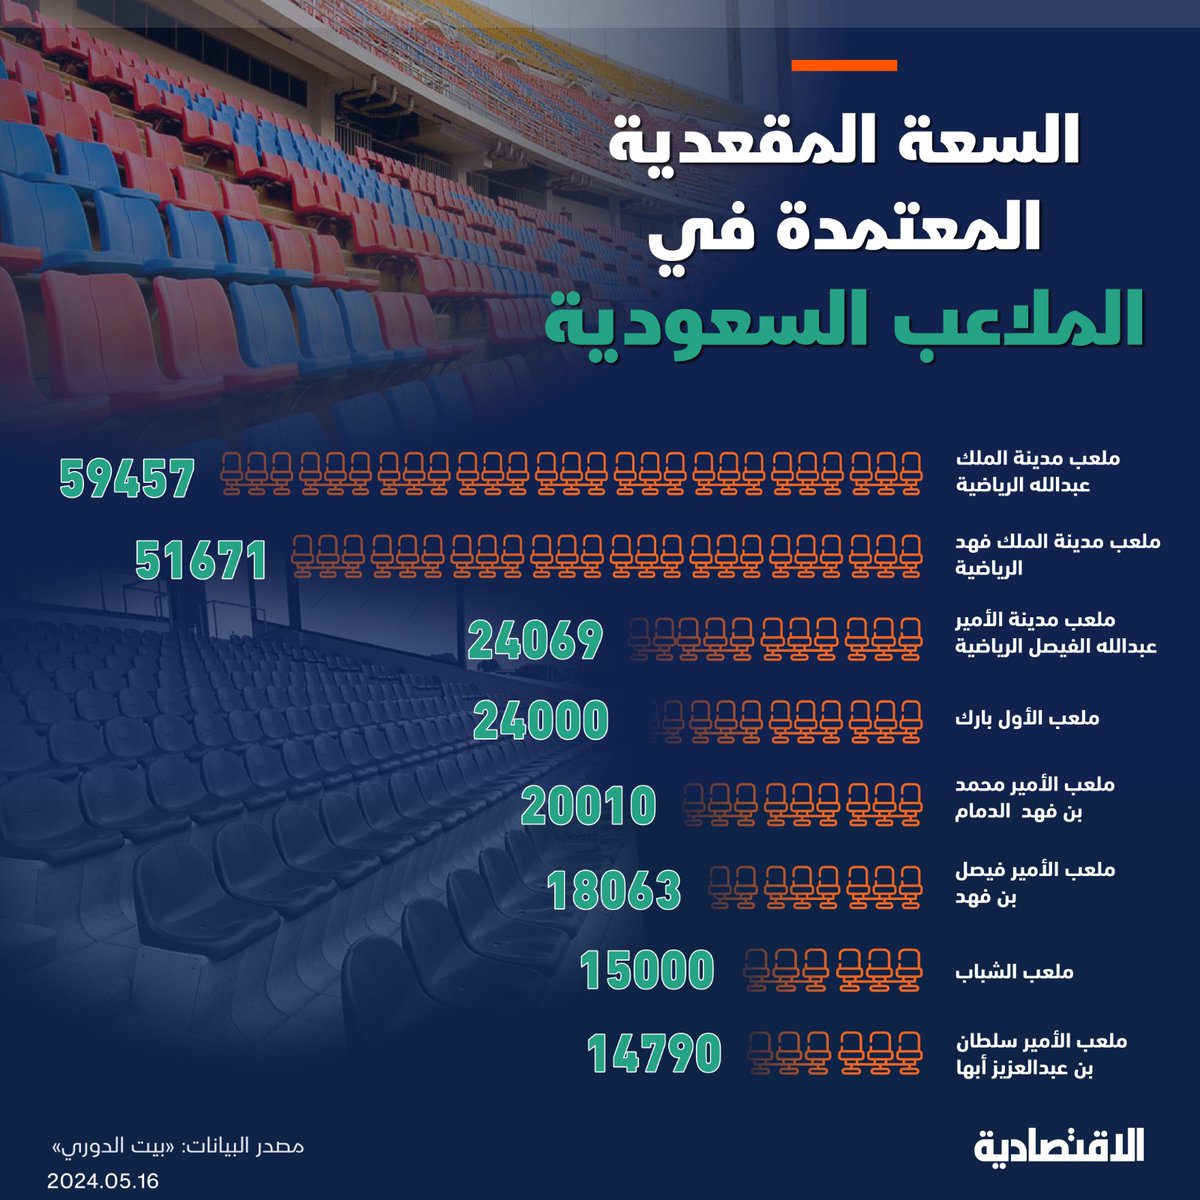 اشتملت كراسة النقل التلفزيوني لمسابقات كرة القدم #السعودية على 358 مباراة خلال الموسم الواحد تشمل 306 مباريات لدوري المحترفين السعودي، 31 مباراة في كأس خادم الحرمين الشريفين، 3 مباريات للسوبر السعودي و18 مباراة للمنتخبات السعودية، بينما تضمنت إنتاج 8 أحداث متعلقة بمناسبات رياضية